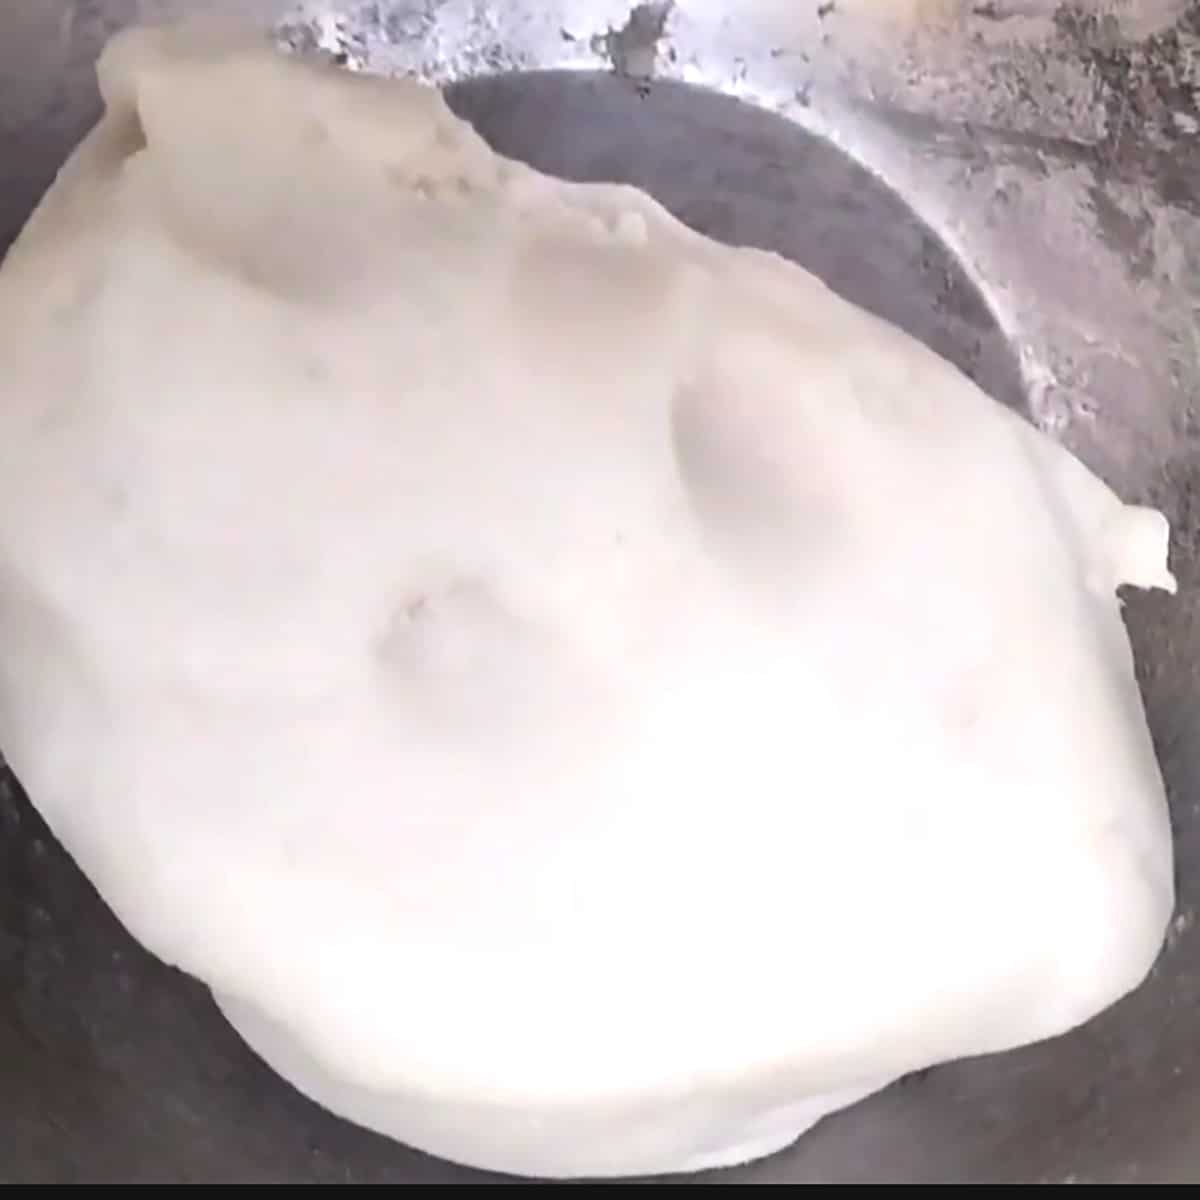 Modak outer covering dough. 